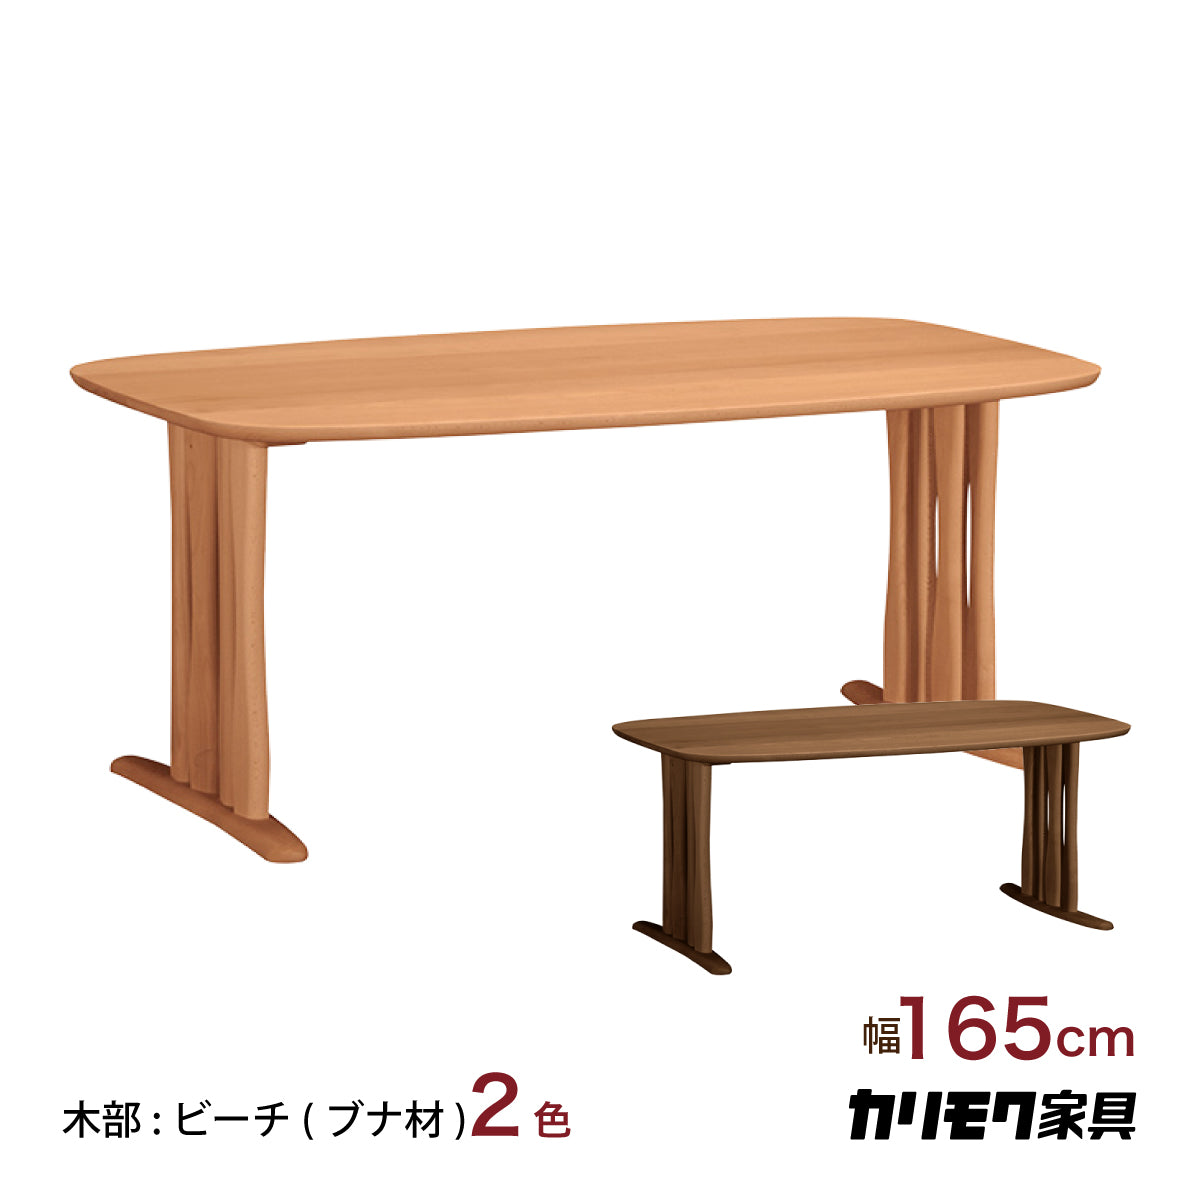 karimoku 半円型無垢材ダイニングテーブル カリモク - ダイニングテーブル